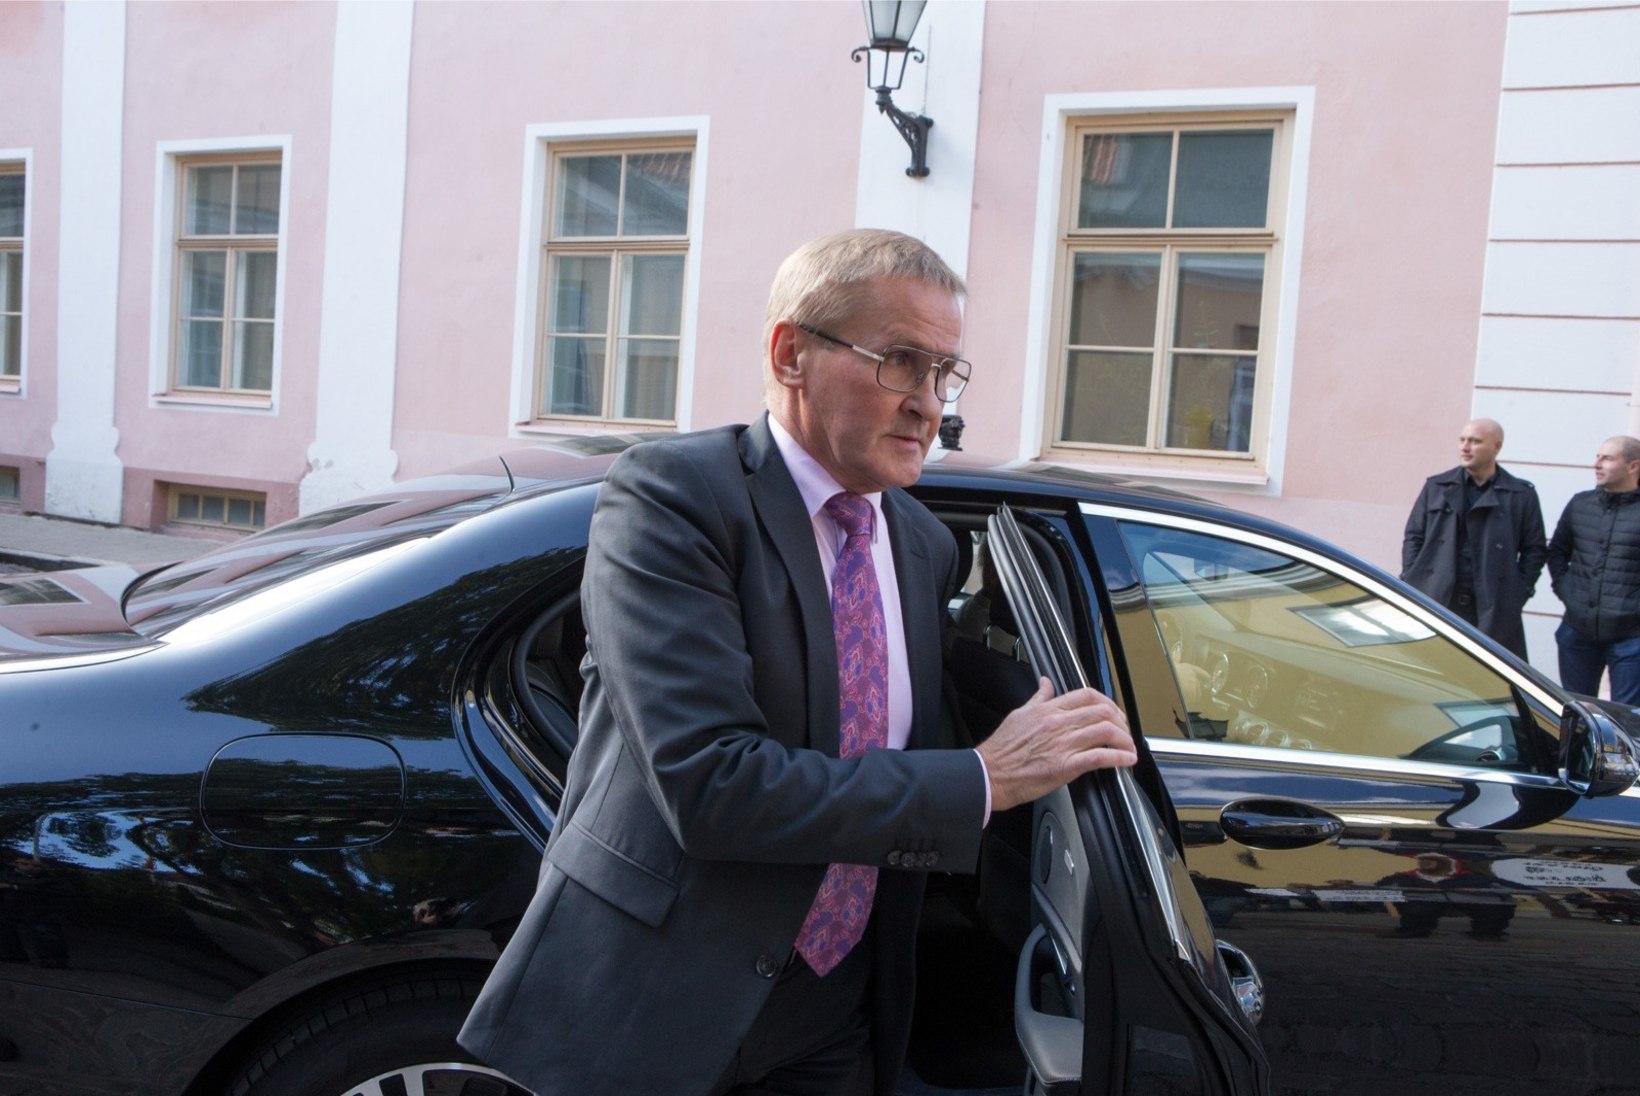 VALITSUSE KORRALDUS | Minister Jaak Aab sai ülesandeks hankida isikukaitsevahendeid